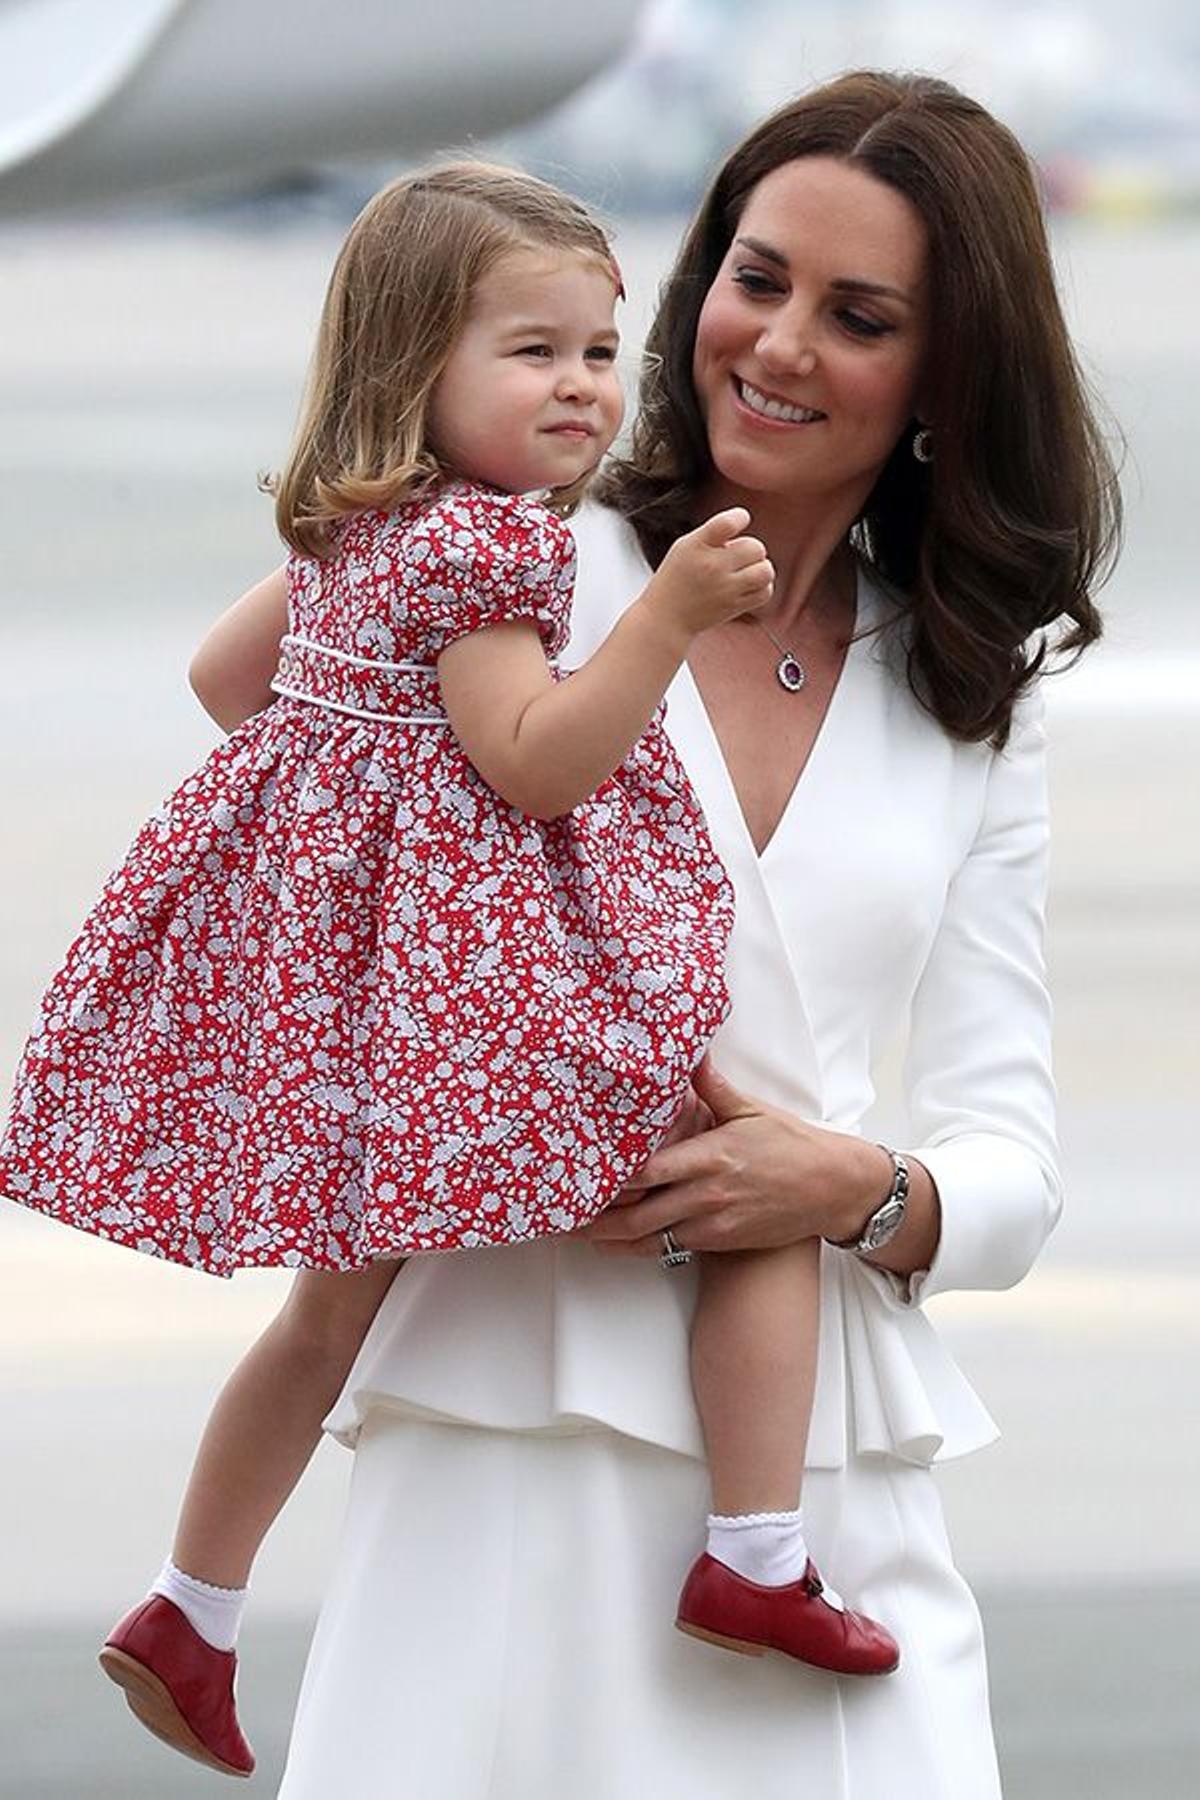 La Duquesa de Cambridge con su hija en brazos